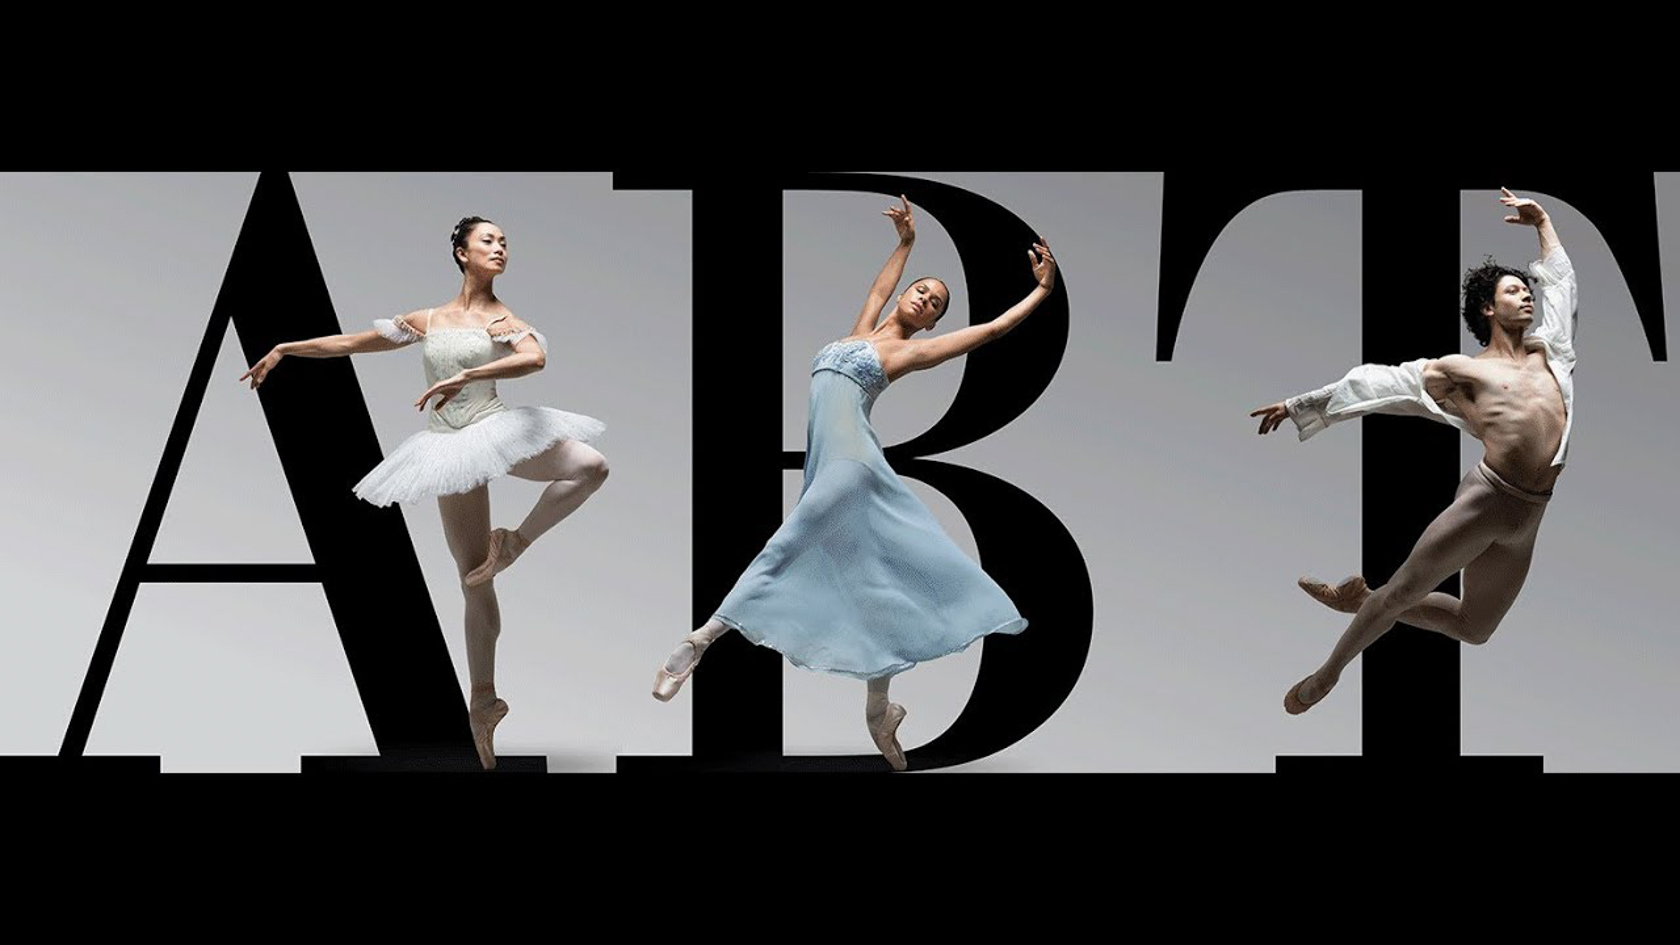 Ballet dancers dancing in front of the American Ballet Theatre logo